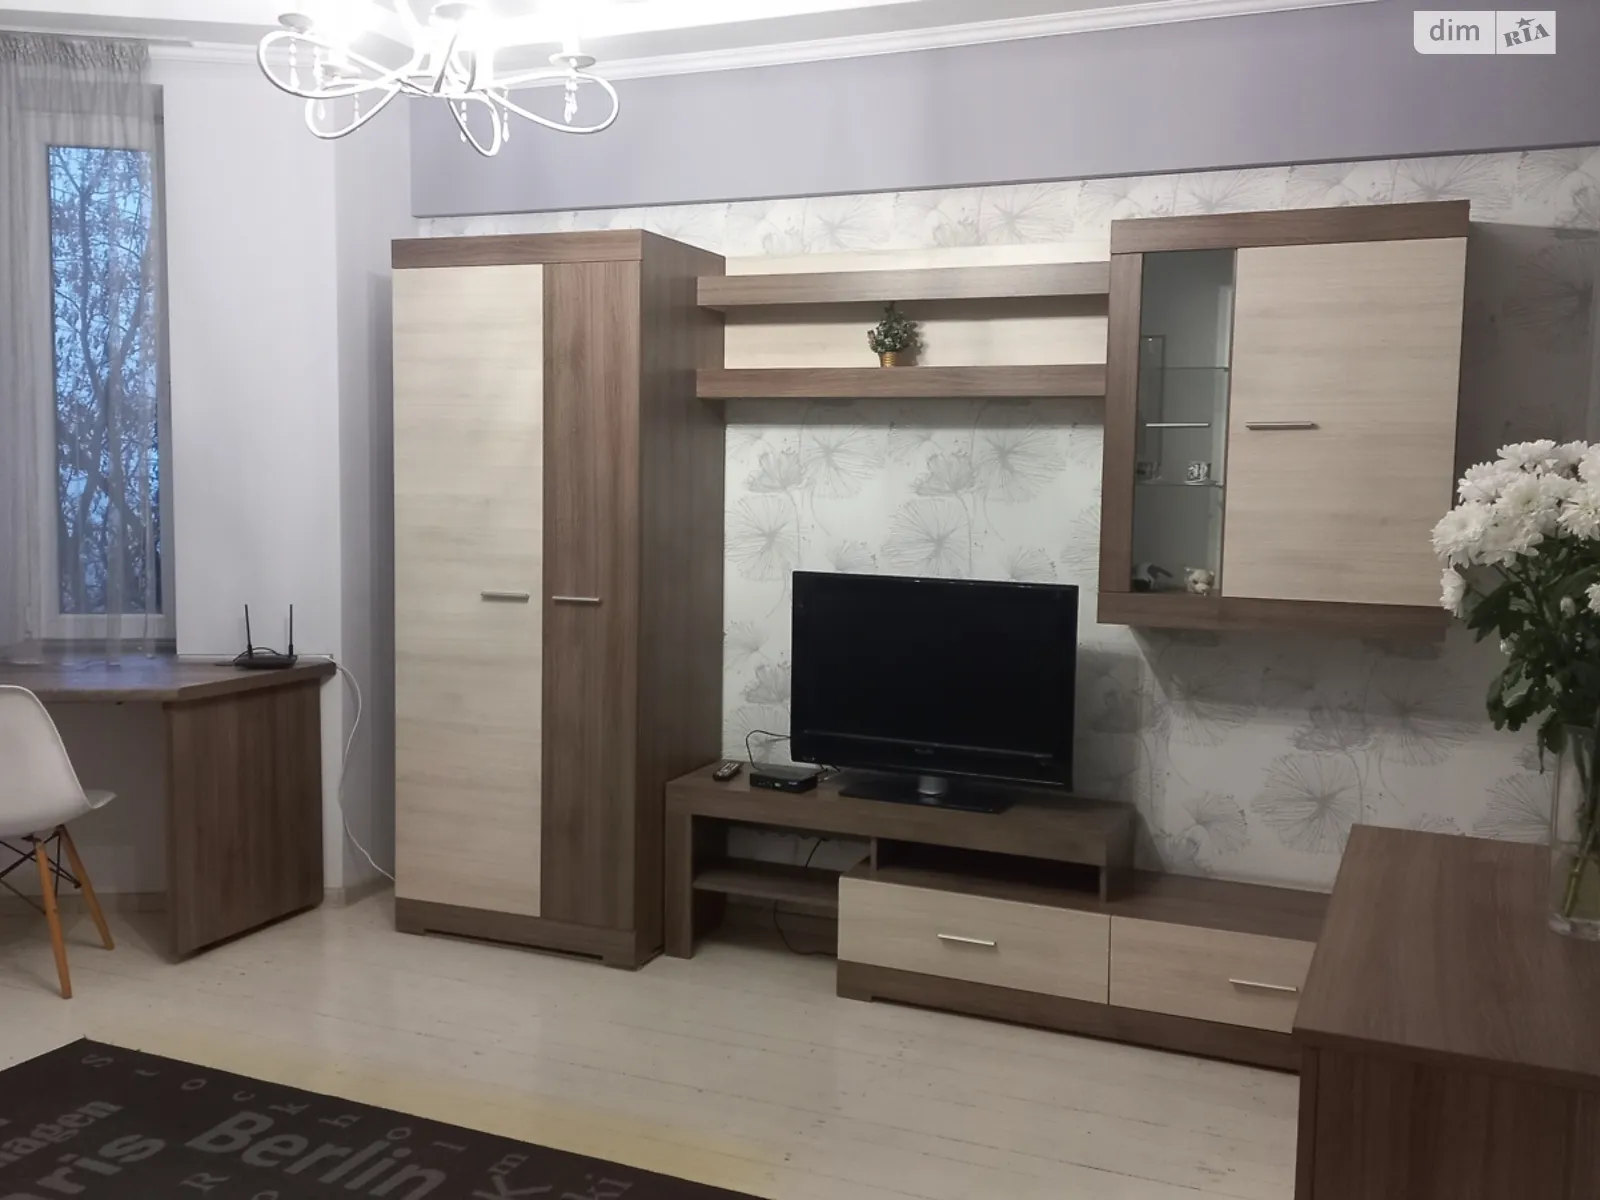 1-кімнатна квартира у Запоріжжі, цена: 990 грн - фото 1